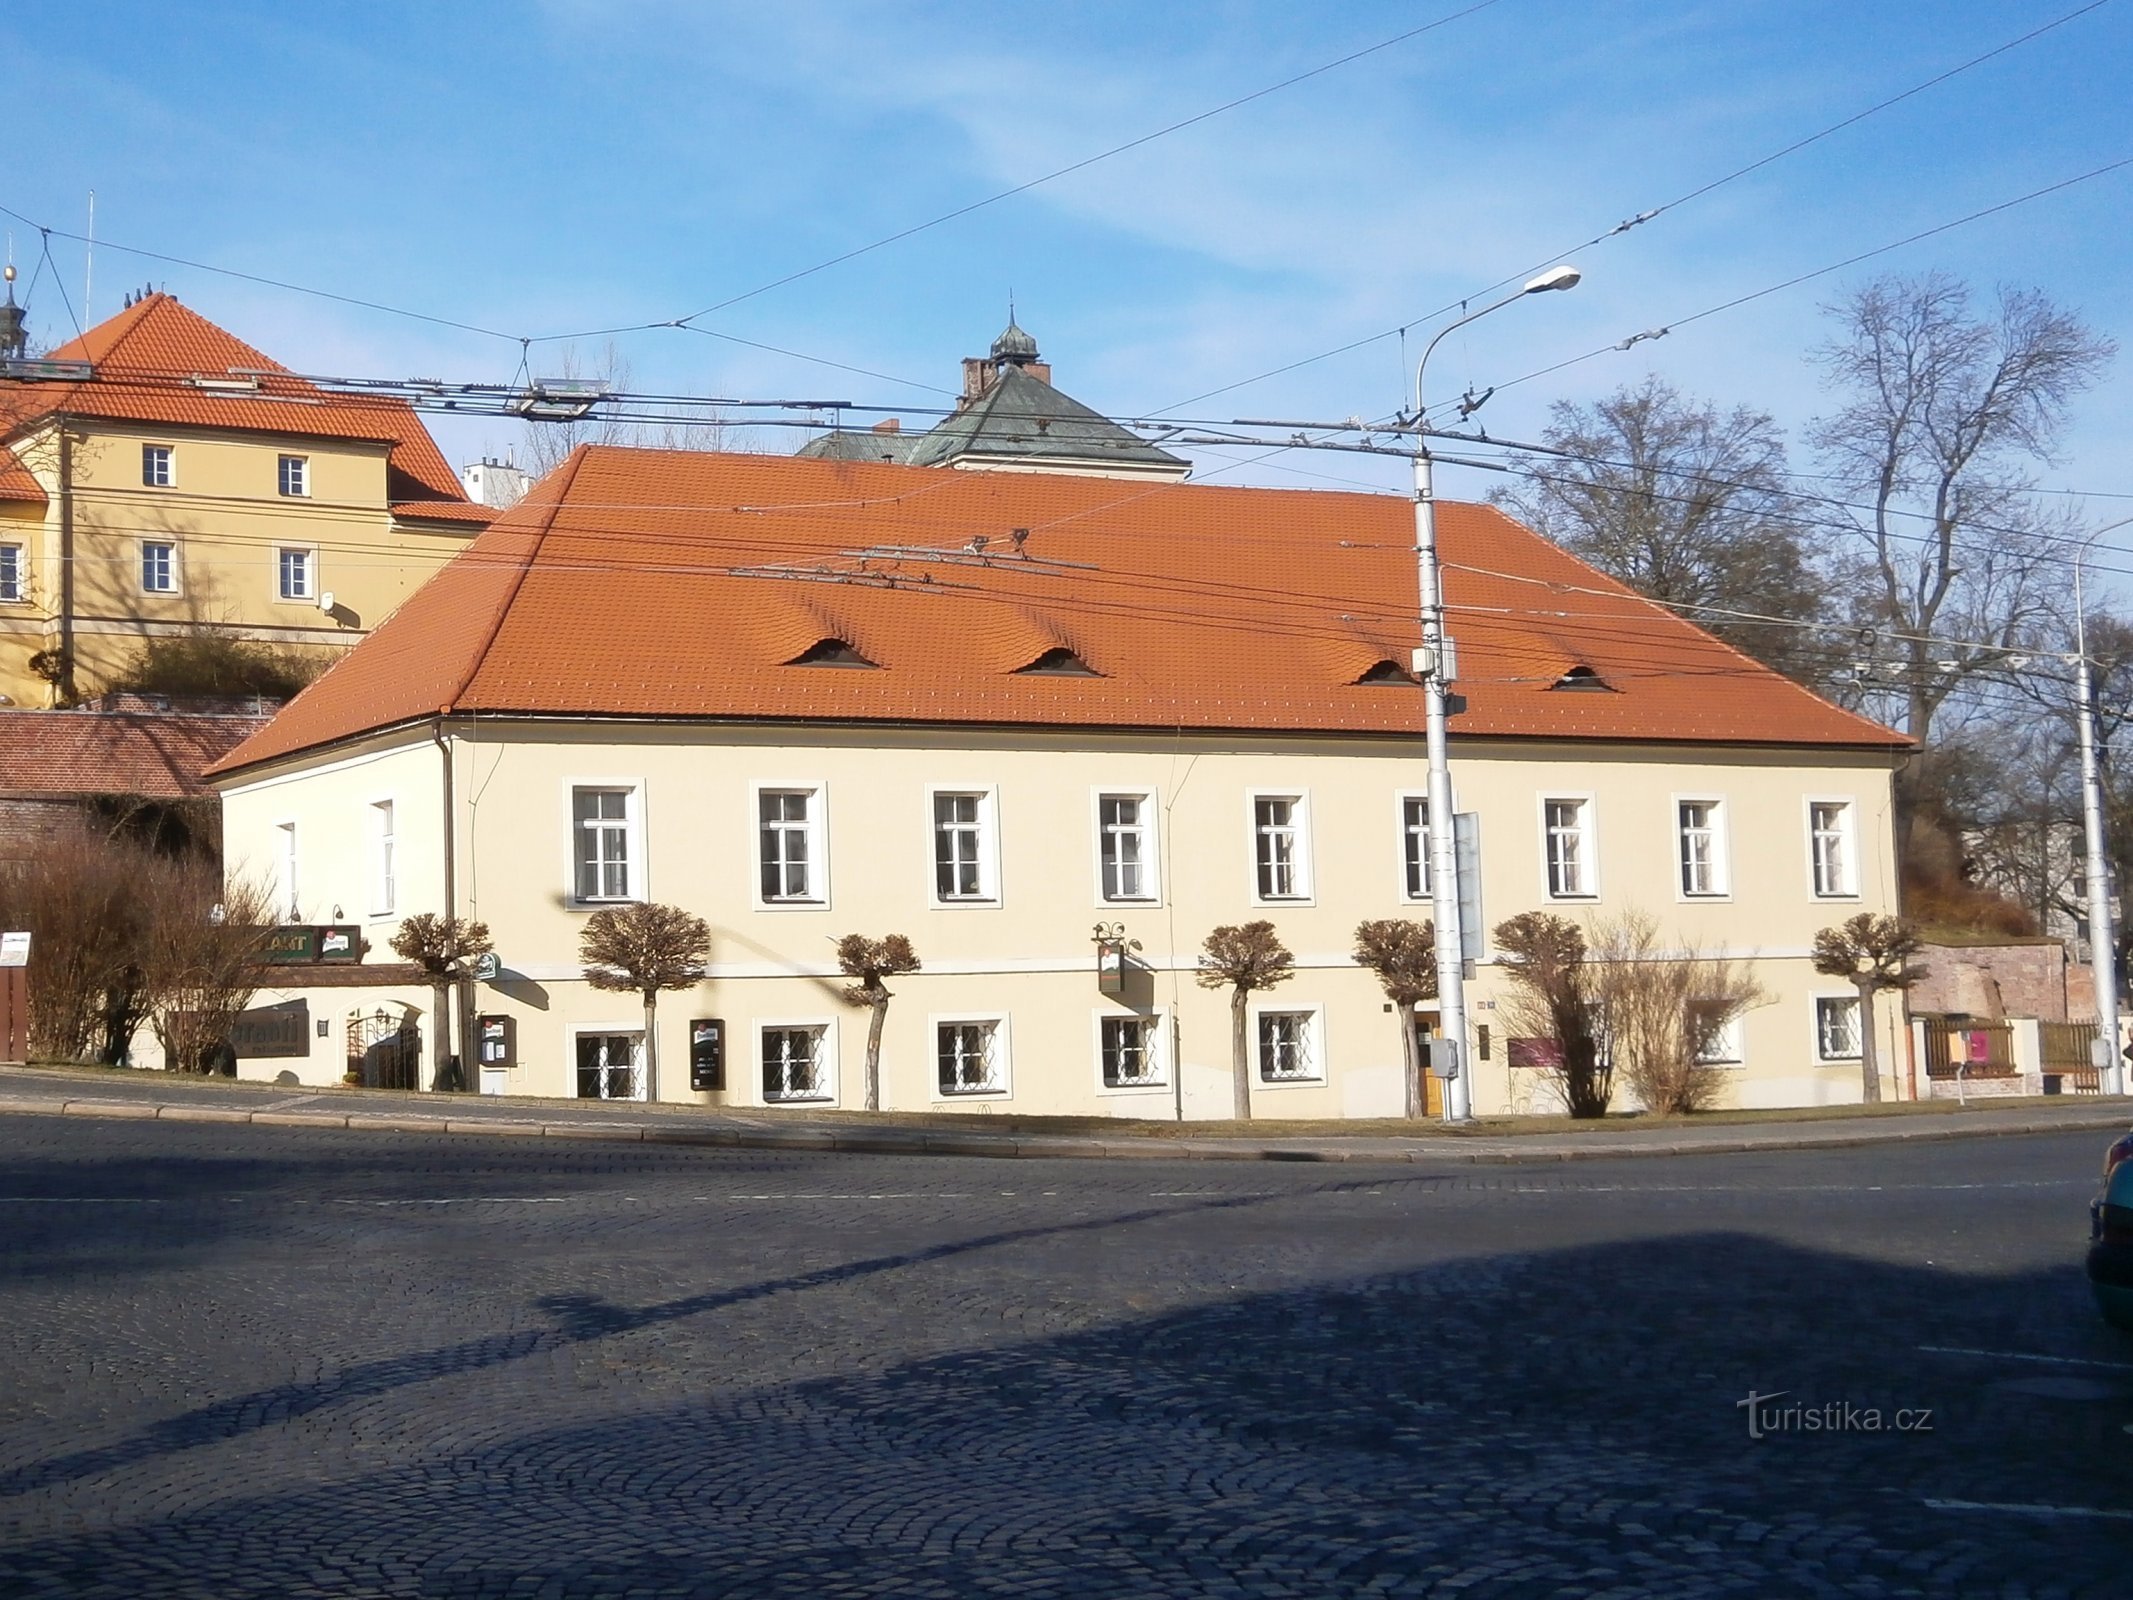 エンジニアリング部門 (Hradec Králové、8.2.2014 年 XNUMX 月 XNUMX 日)